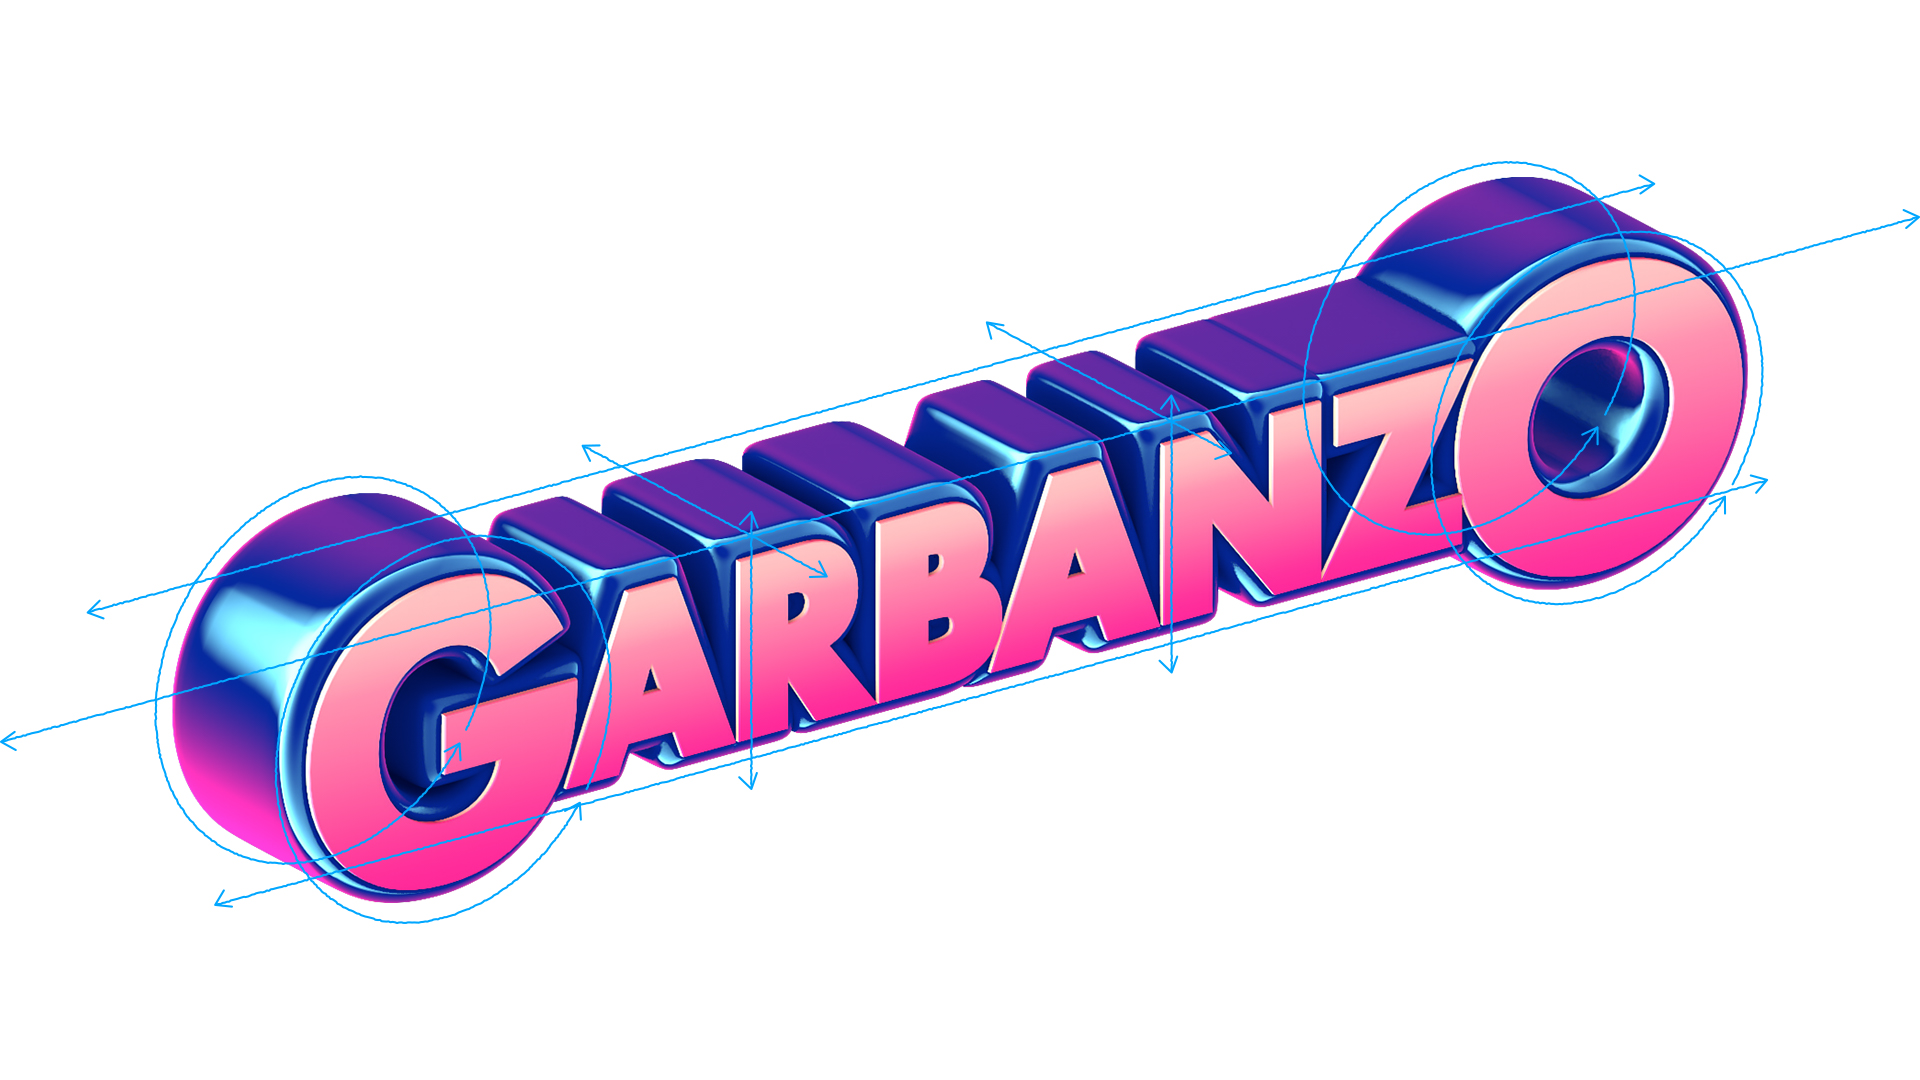 Garbanzo Rebrand 82